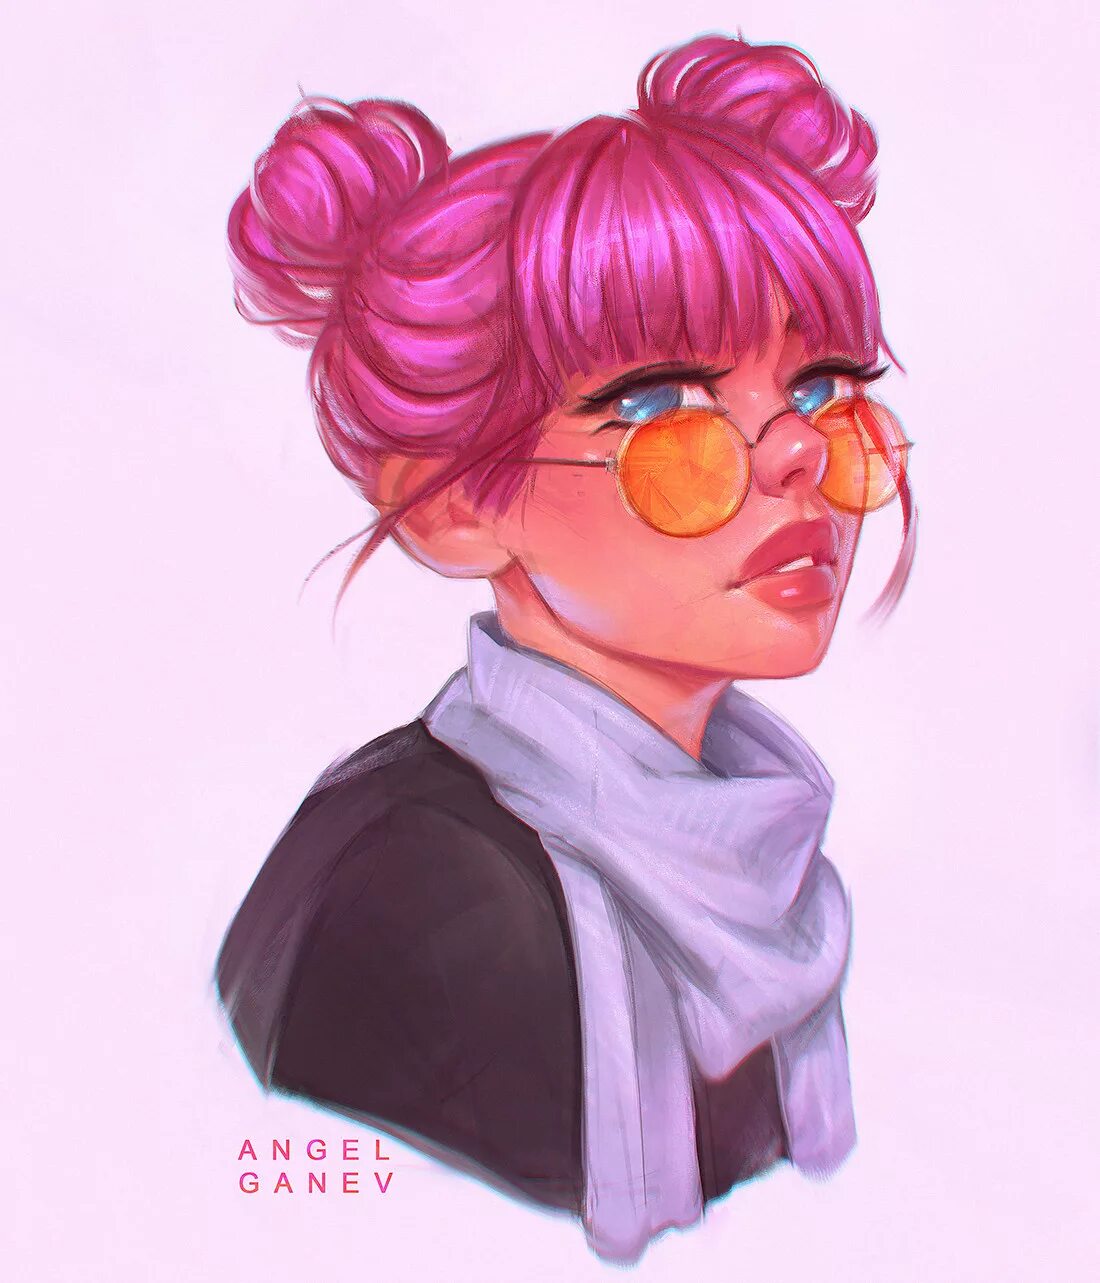 Angel Ganev арт. Девушка с пучком на голове арт. Девушка в очках розовые волосы арт. Розовые волосы в очках